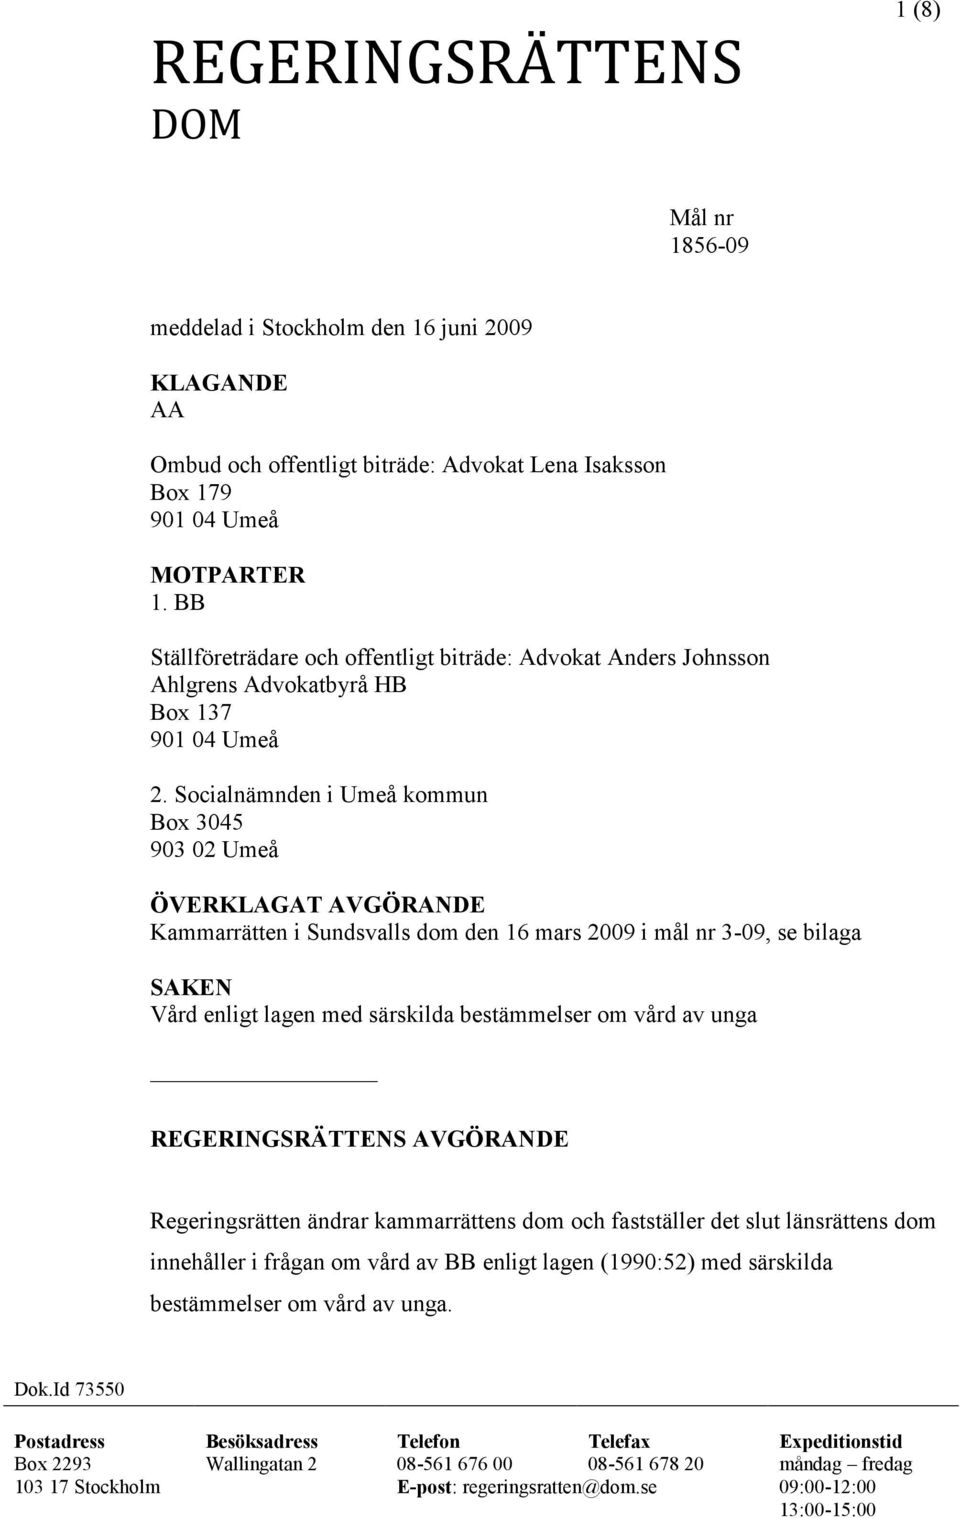 Socialnämnden i Umeå kommun Box 3045 903 02 Umeå ÖVERKLAGAT AVGÖRANDE Kammarrätten i Sundsvalls dom den 16 mars 2009 i mål nr 3-09, se bilaga SAKEN Vård enligt lagen med särskilda bestämmelser om